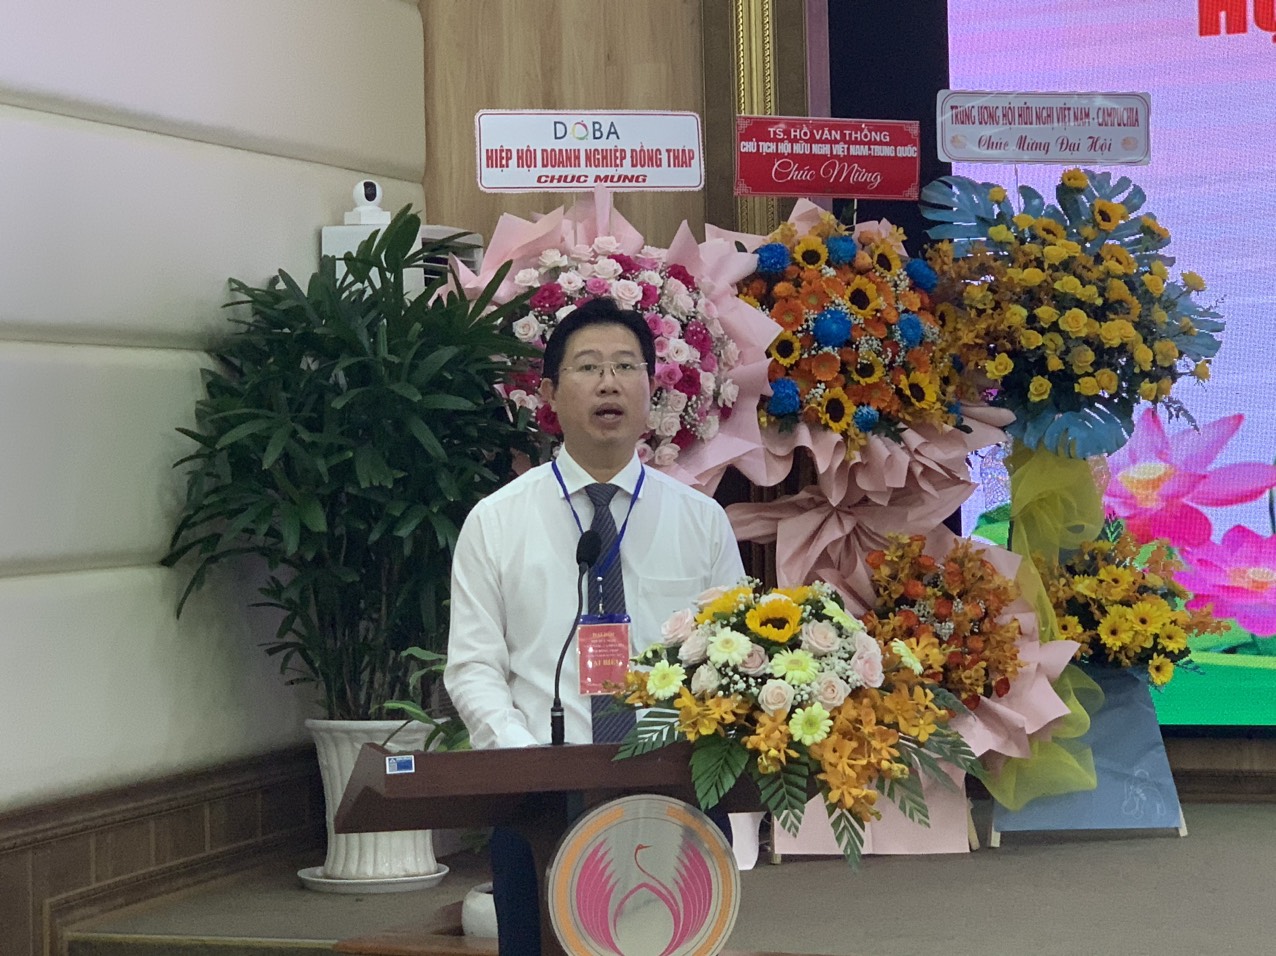 Ông Huỳnh Minh Tuấn - Phó Chủ tịch UBND tỉnh Đồng Tháp, Chủ tịch Hội Hữu nghị VN - CPC tỉnh Đồng Tháp, phát biểu khai mạc Đại hội.